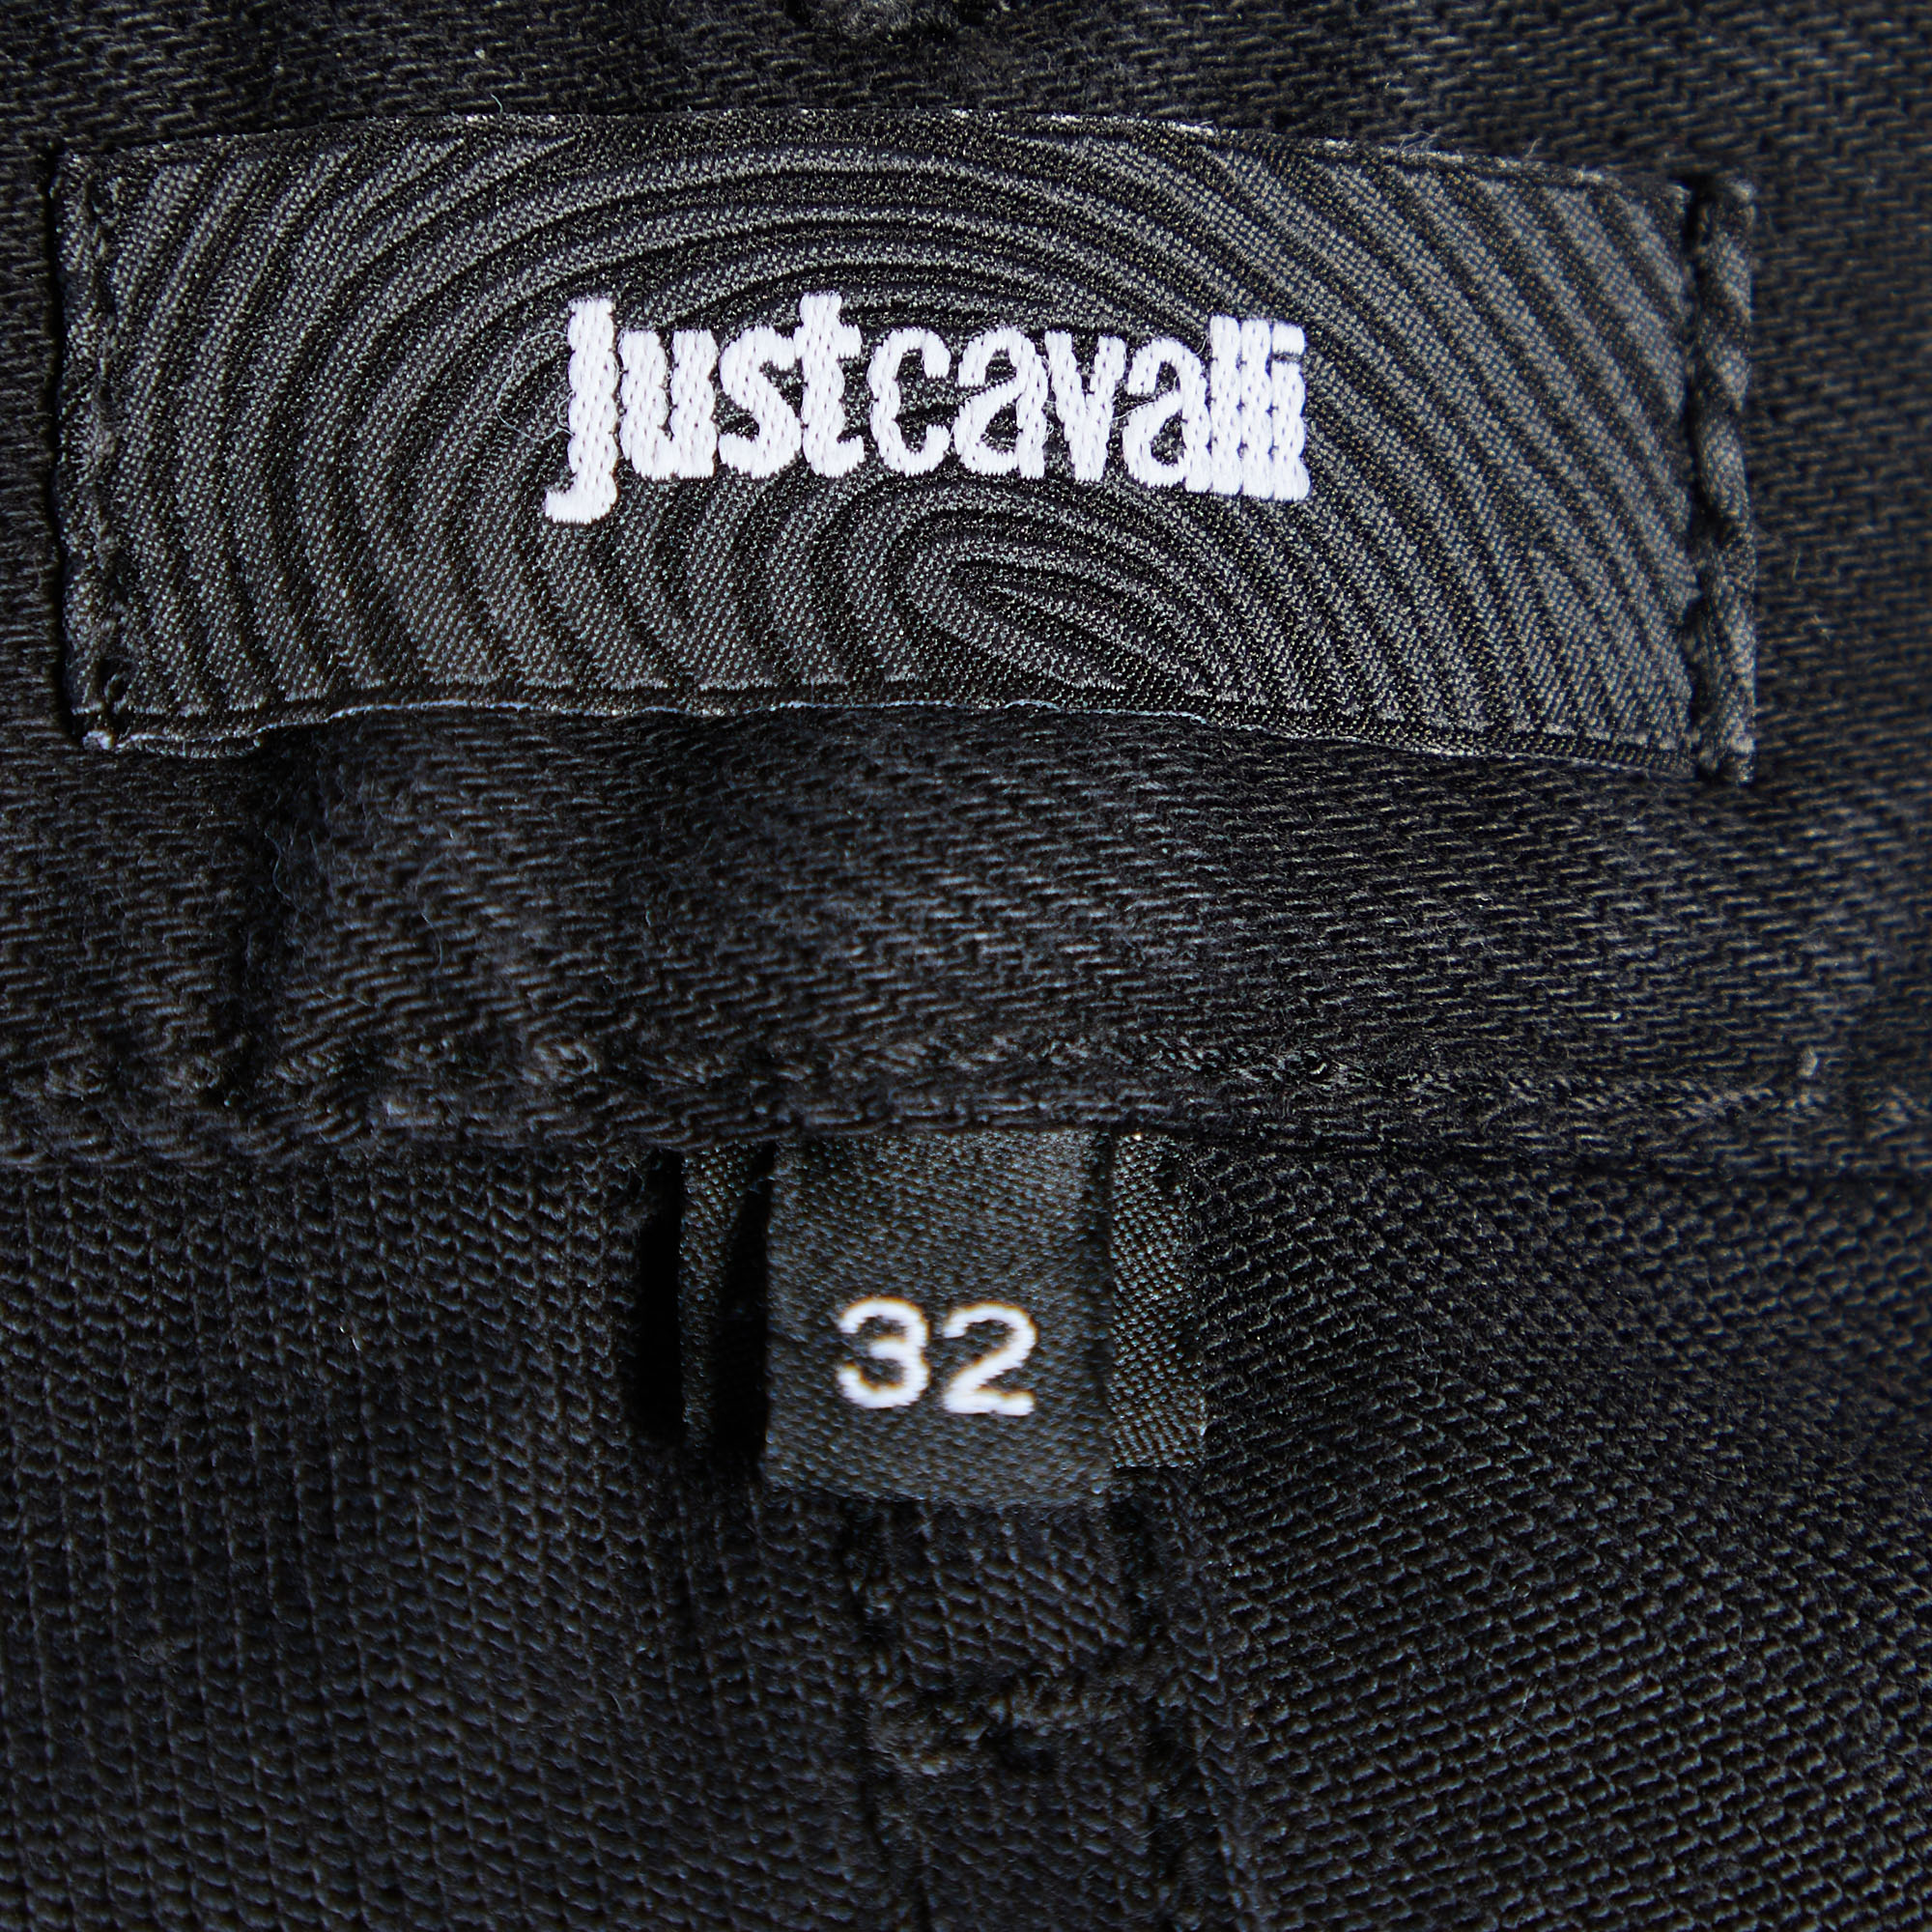 Just Cavalli Black Denim Super Slim Fit Jeans L